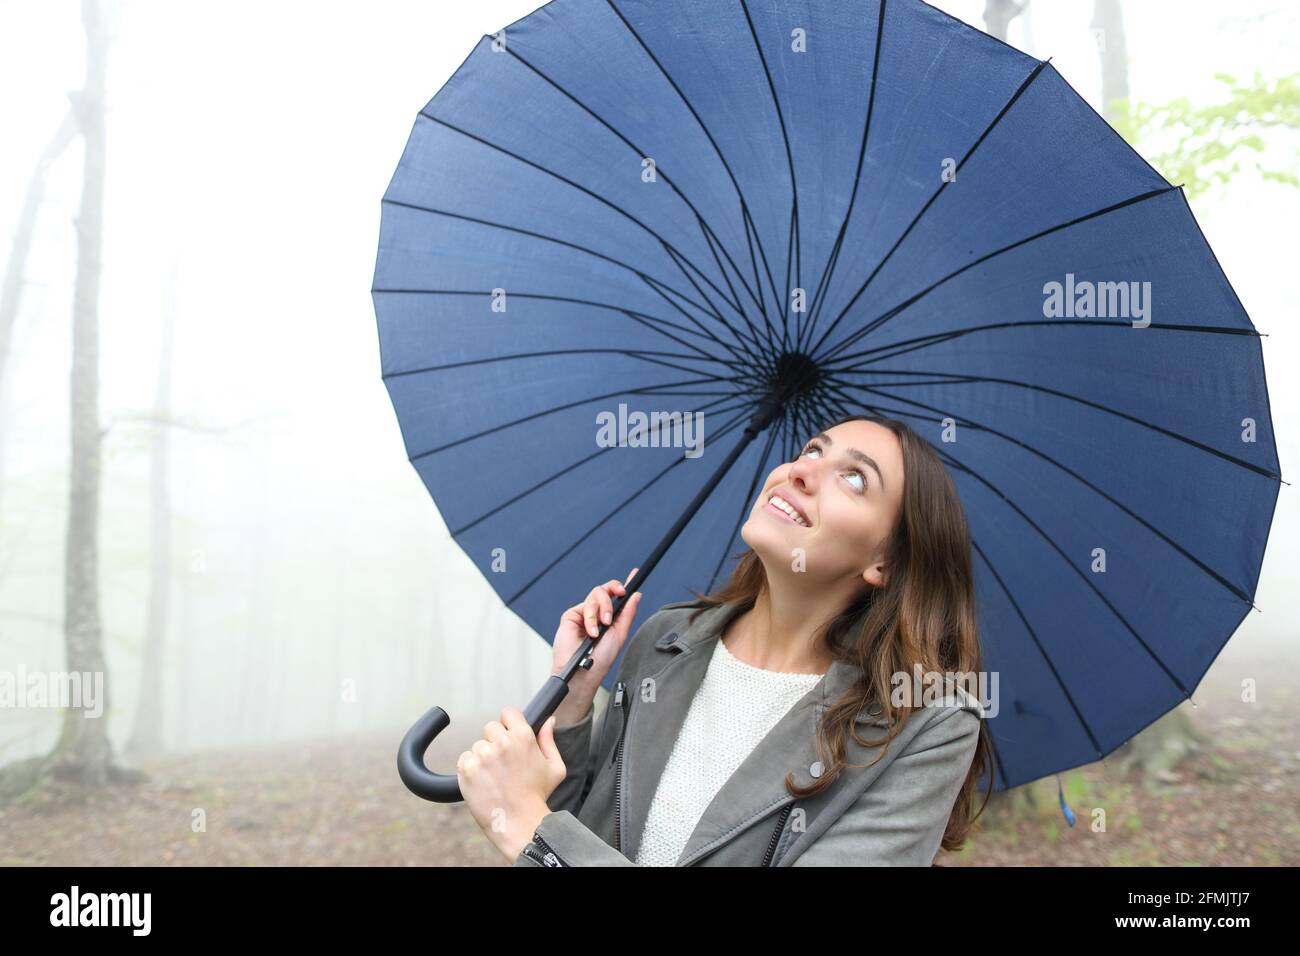 Glückliche Frau unter dem Regenschirm, die den Regen beim herkommen sah Ein nebliger Park Stockfoto